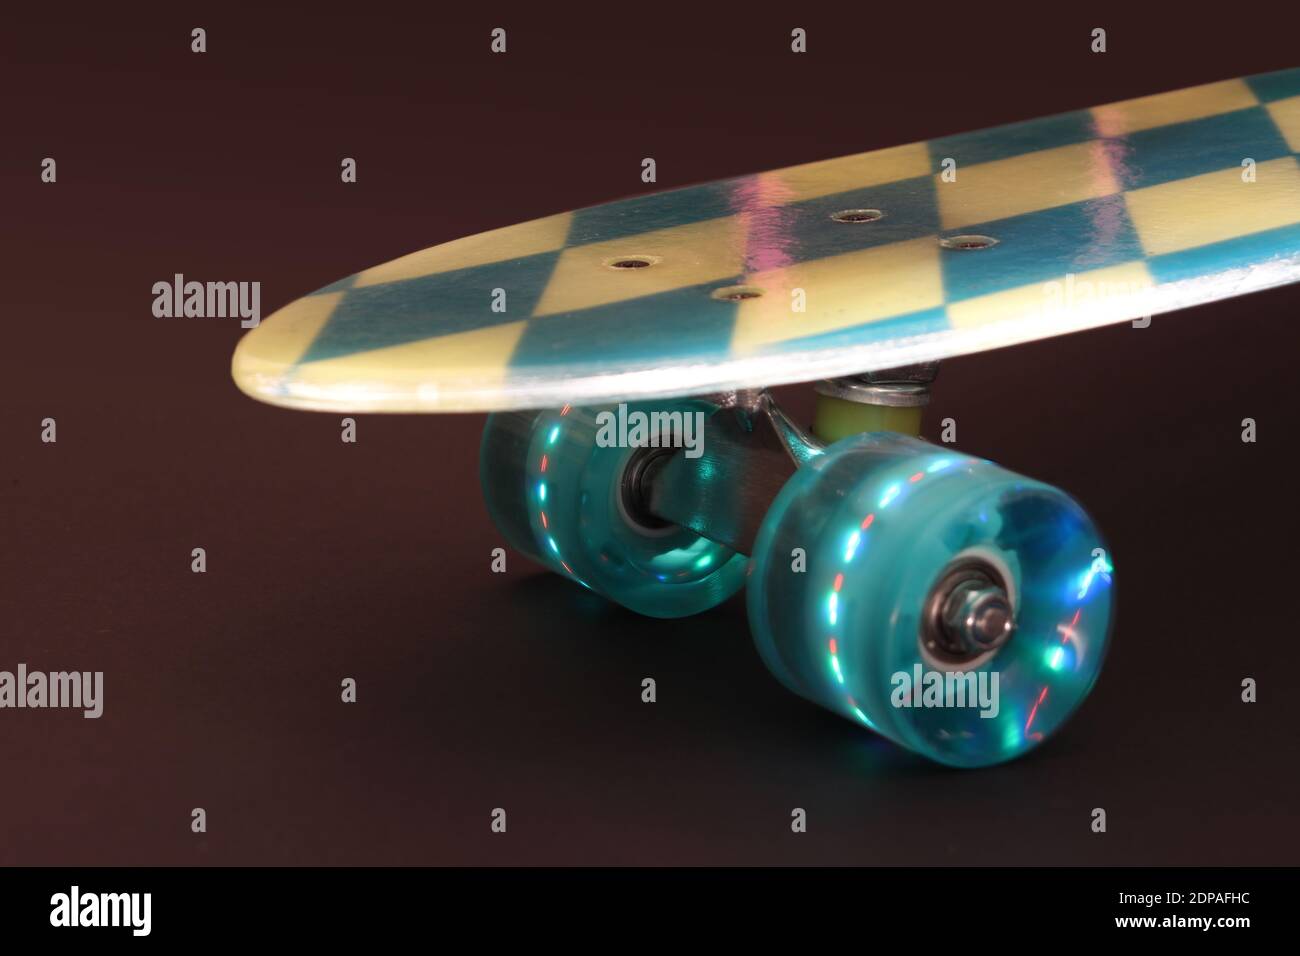 Bavaria-Design Skateboard mit durchscheinendem Deck und LED-Rollen, die beim Rollen aufleuchten Foto de stock